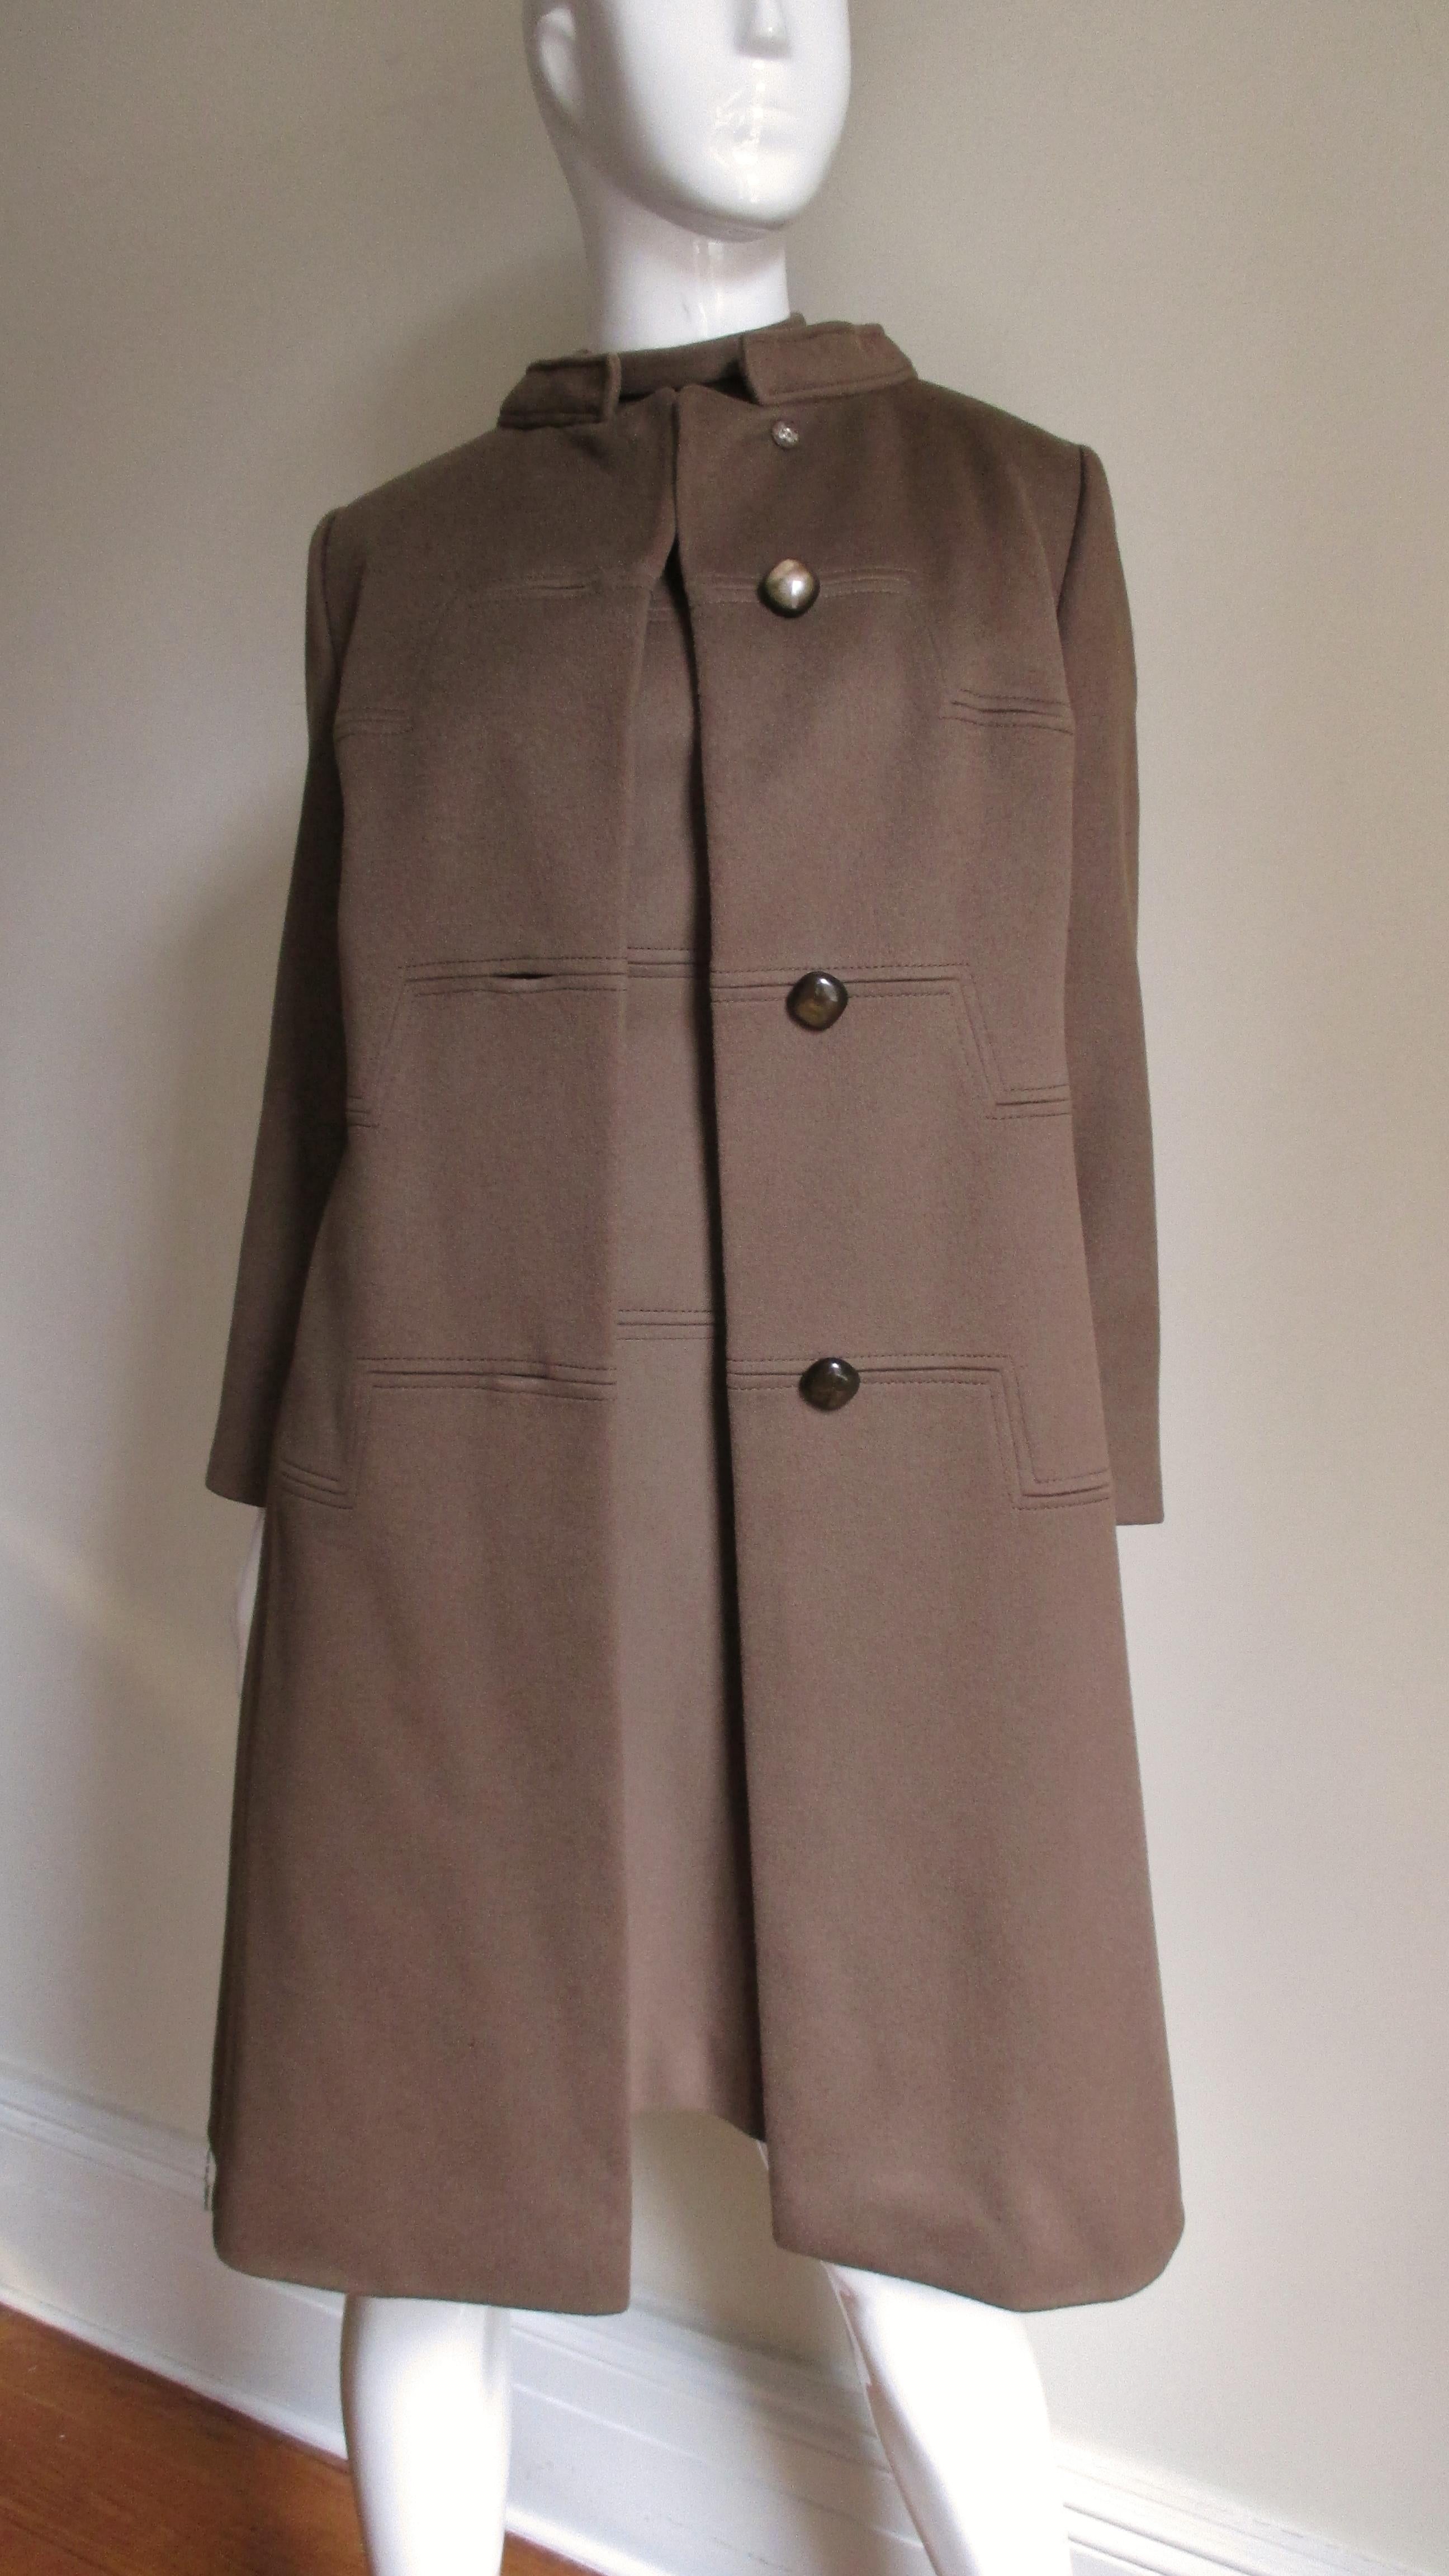 Ein wunderschönes Kleid- und Mantelset aus braunem Kaschmir aus den 1960er Jahren, hergestellt von Rike's, Schweiz, für das gehobene Kaufhaus Dayton's. Das Kleid in A-Linie hat kurze Ärmel, einen Stehkragen und drei horizontale, quadratische Nähte -